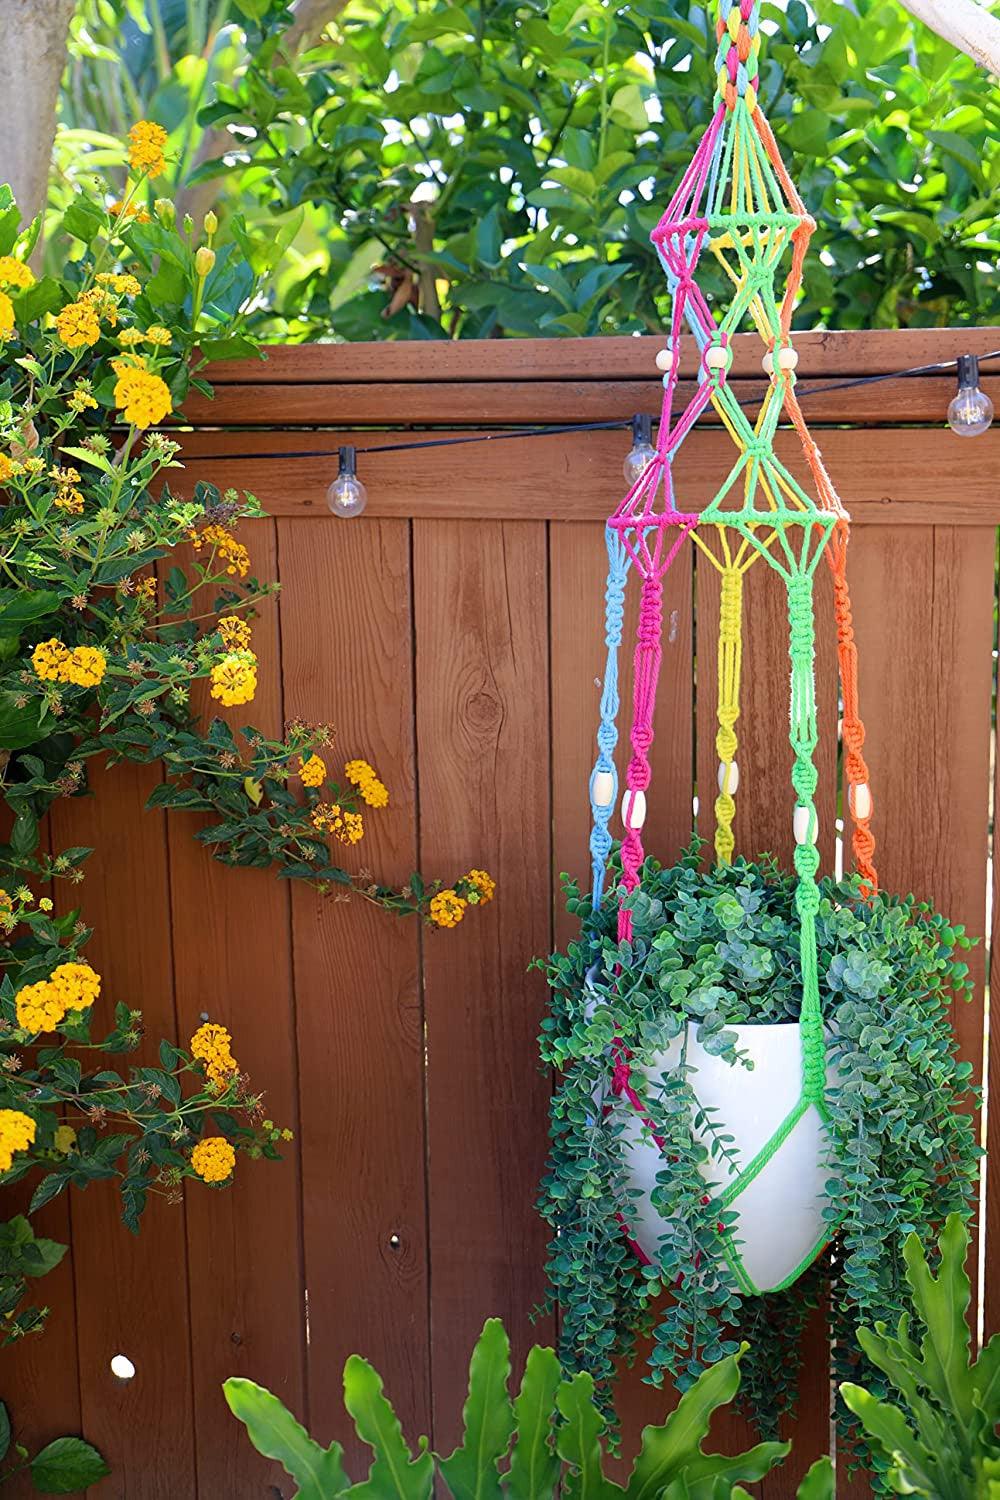 Harmony Weave Hanging Planter - Youpa's Rainbow Large Macrame Plant Hanger - KnittsKnotts